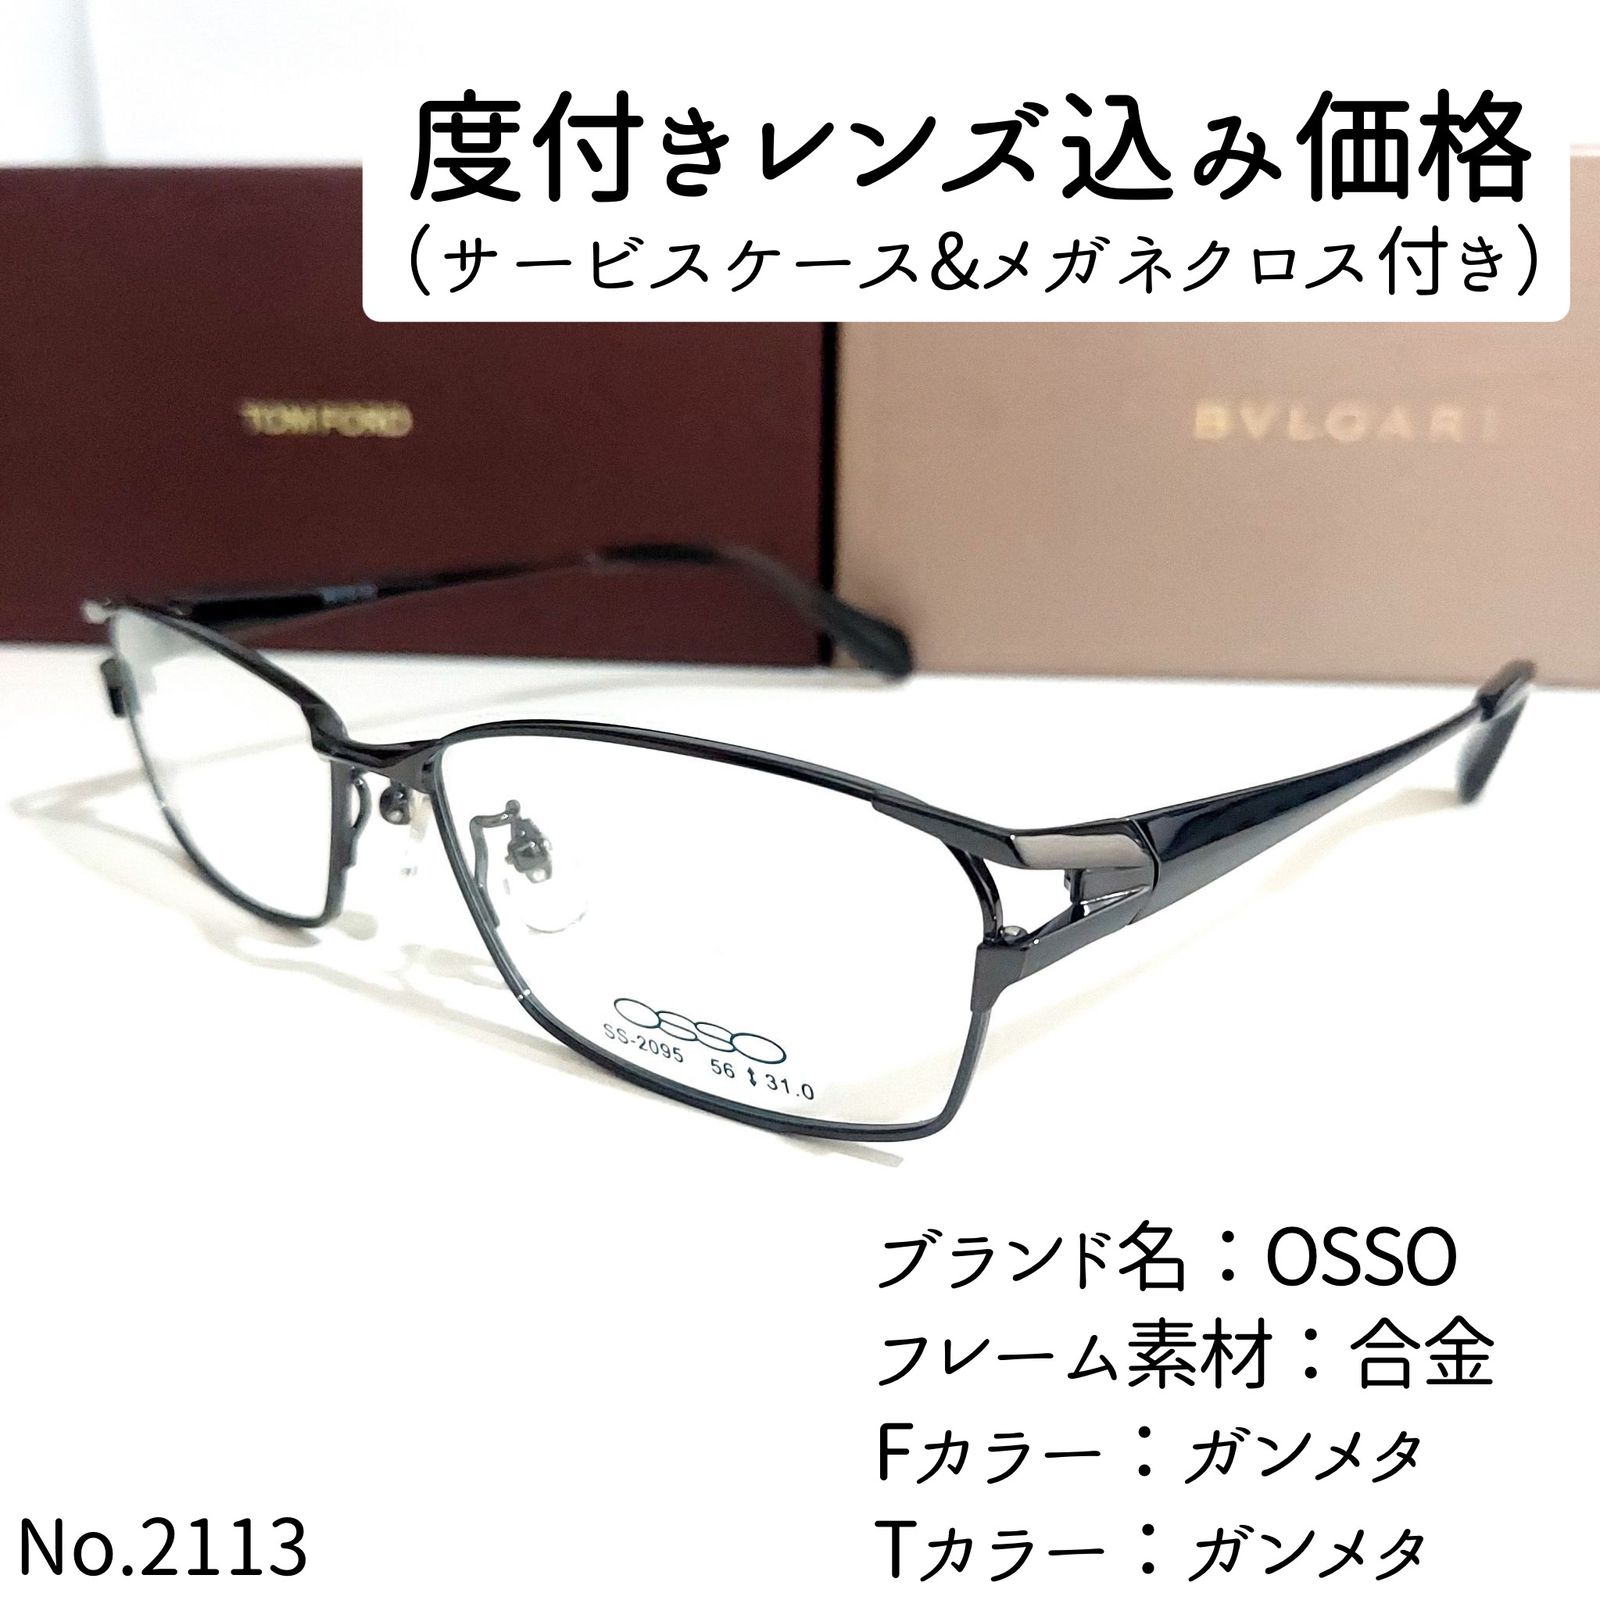 No.2113+メガネ OSSO【度数入り込み価格】 - サングラス/メガネ